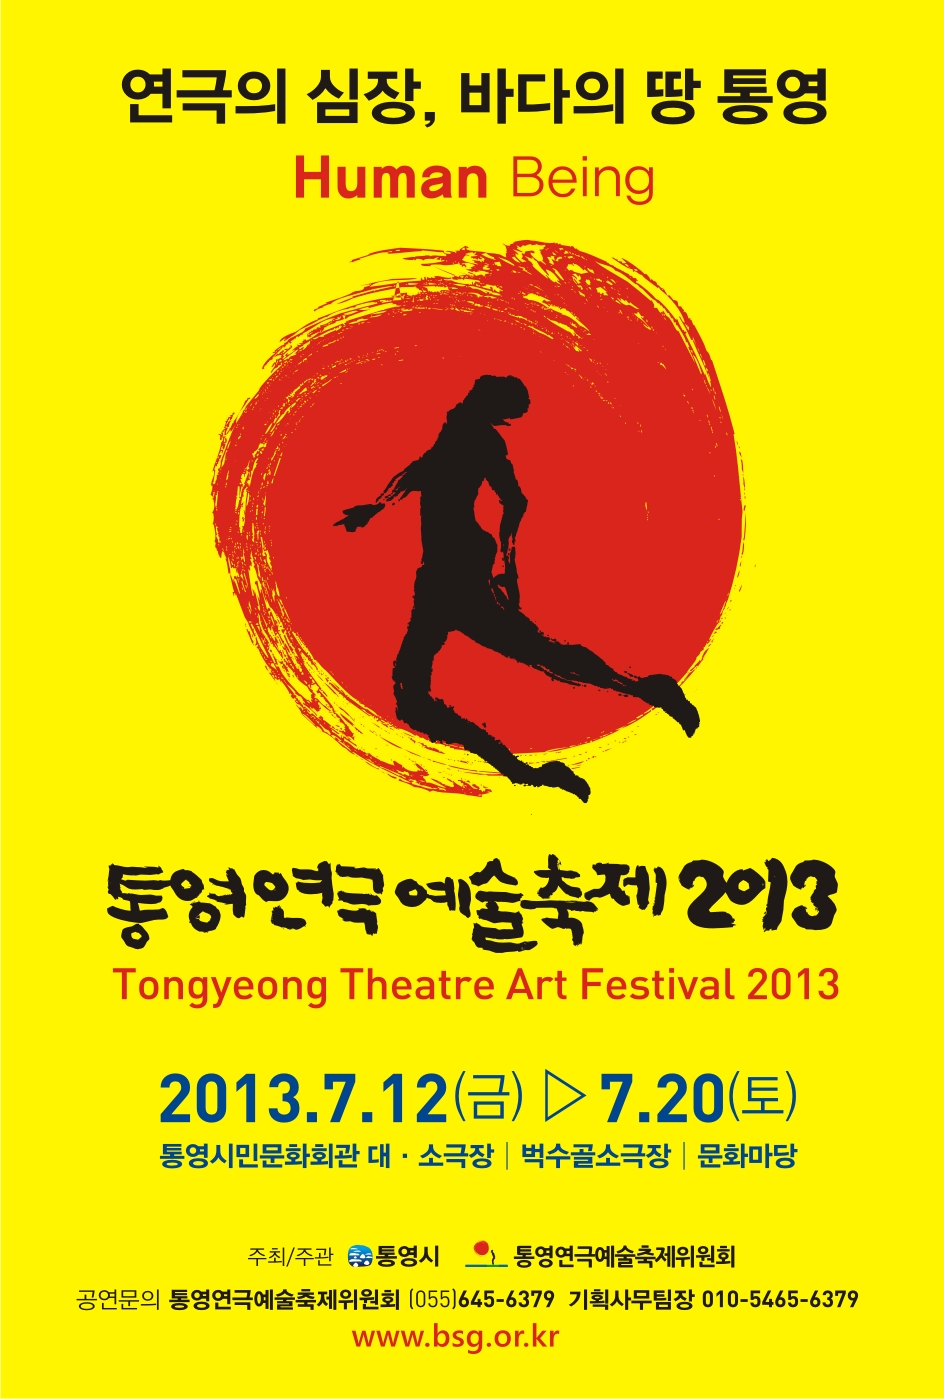 <2013 통영연극예술축제>가 열립니다^^많은 관심 바랍니다. - 1